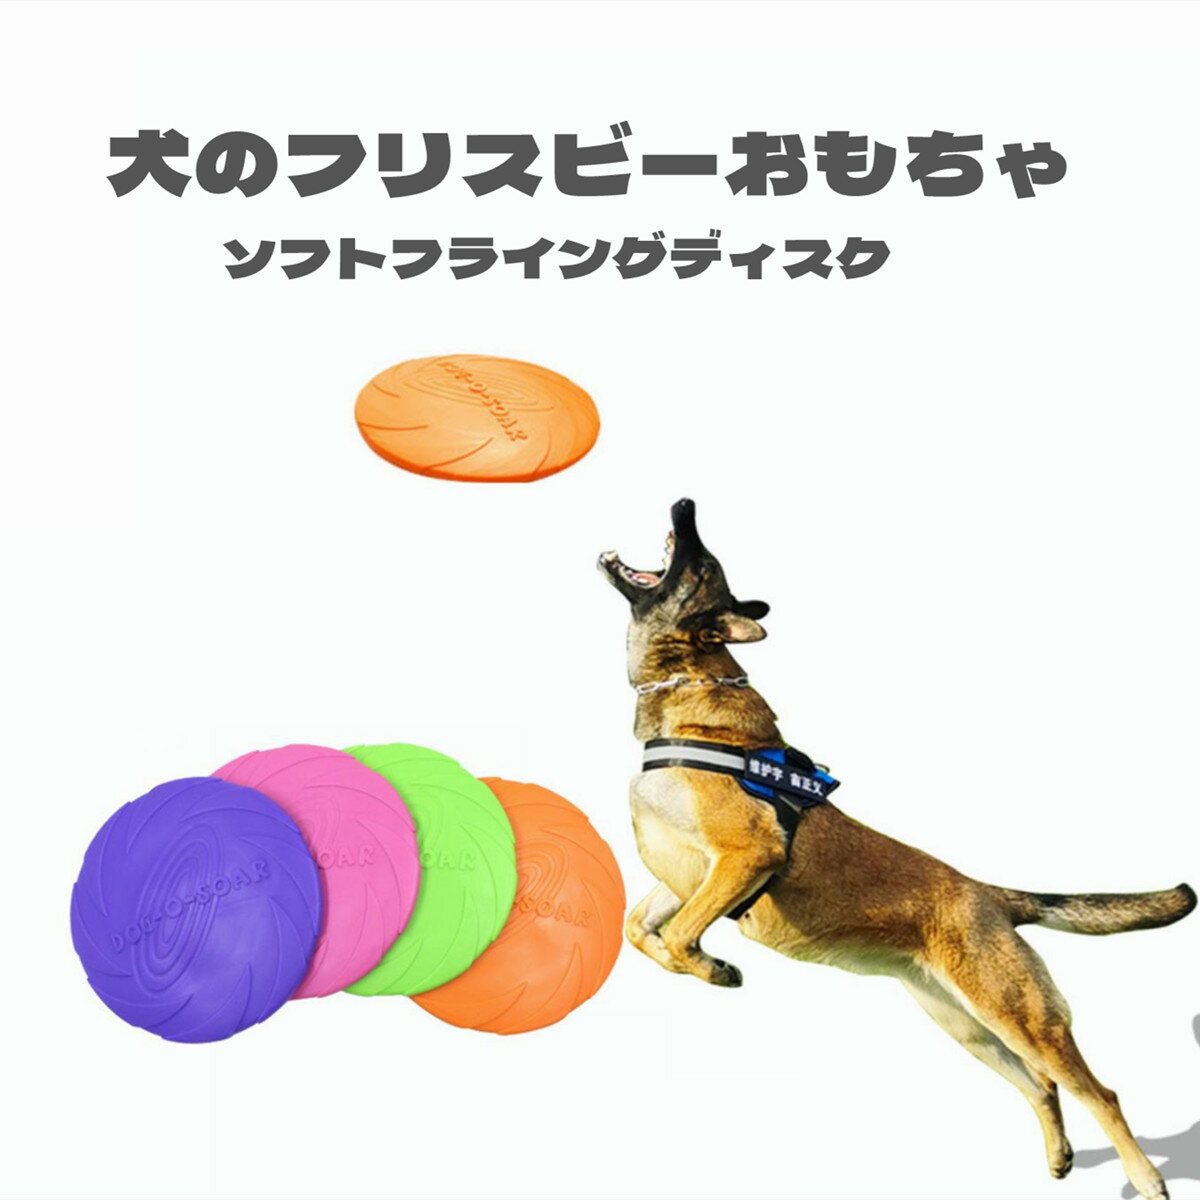 1000円ポッキリ ポイント消化 犬 フリスビー ソフトフライングディスク おもちゃ 投げるおもちゃ スポーツ シリコン製 運動不足 ストレス解消 一枚 お子様やペットと♪